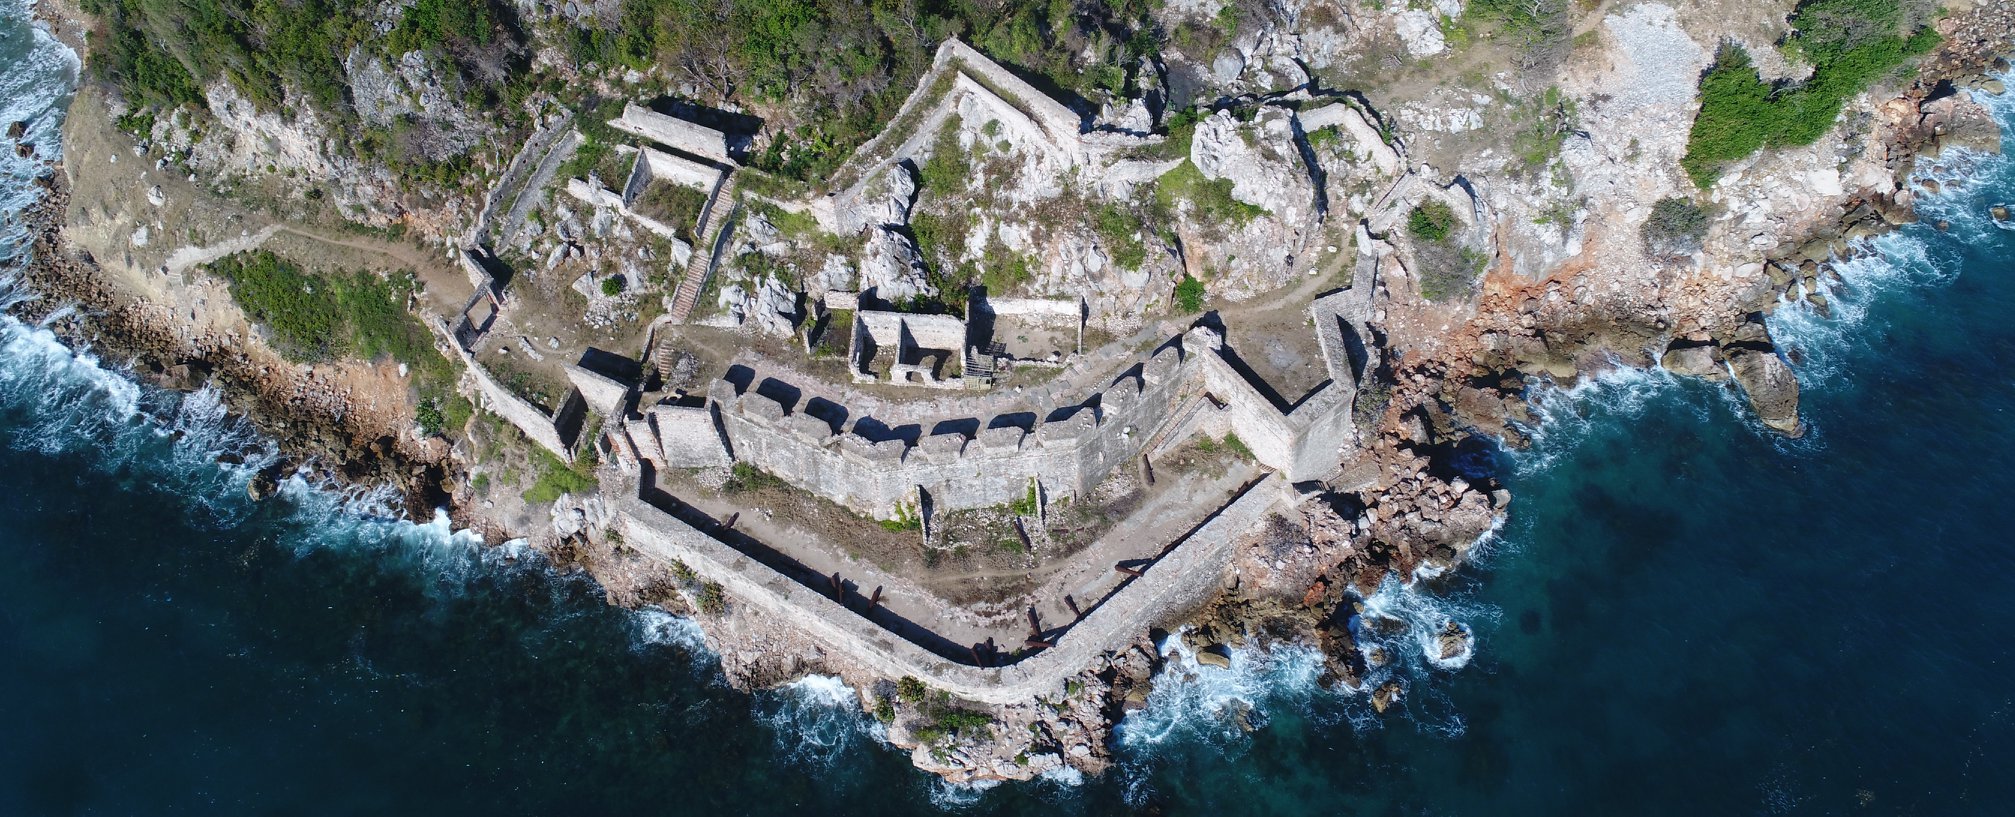 Fort Picolet